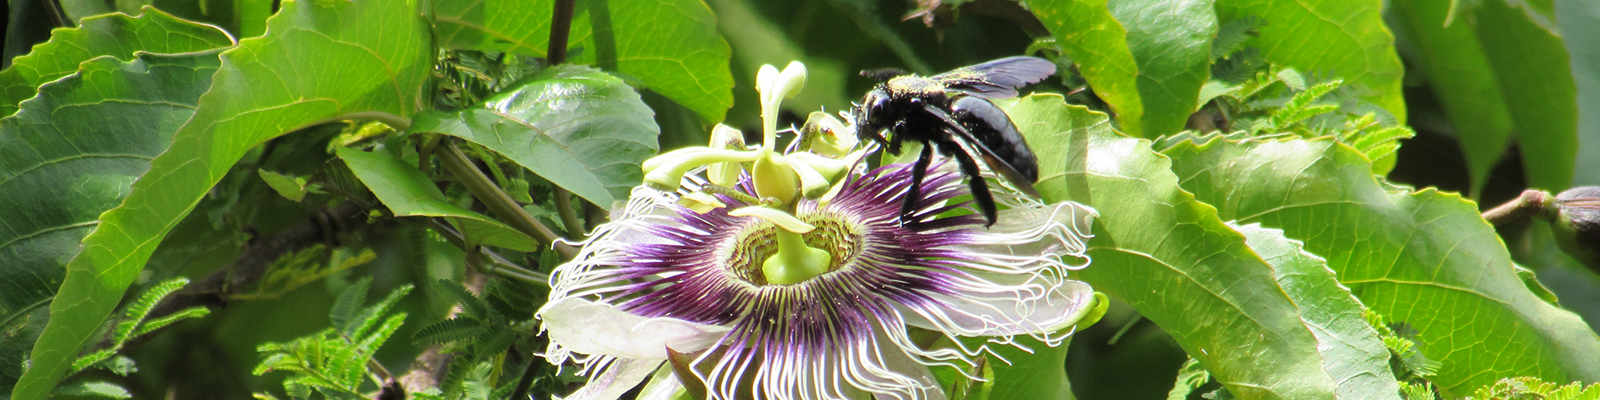 Foto do 1o Concurso de Fotografia- PPGADR – Tu mirada sobre el ambiente. El coqueteo. Leticia Bolonha Lucati. Un abejorro, de color negro y con polen dorado en la superficie, se encuentra polinizando una flor de maracuyá blanca y morada.